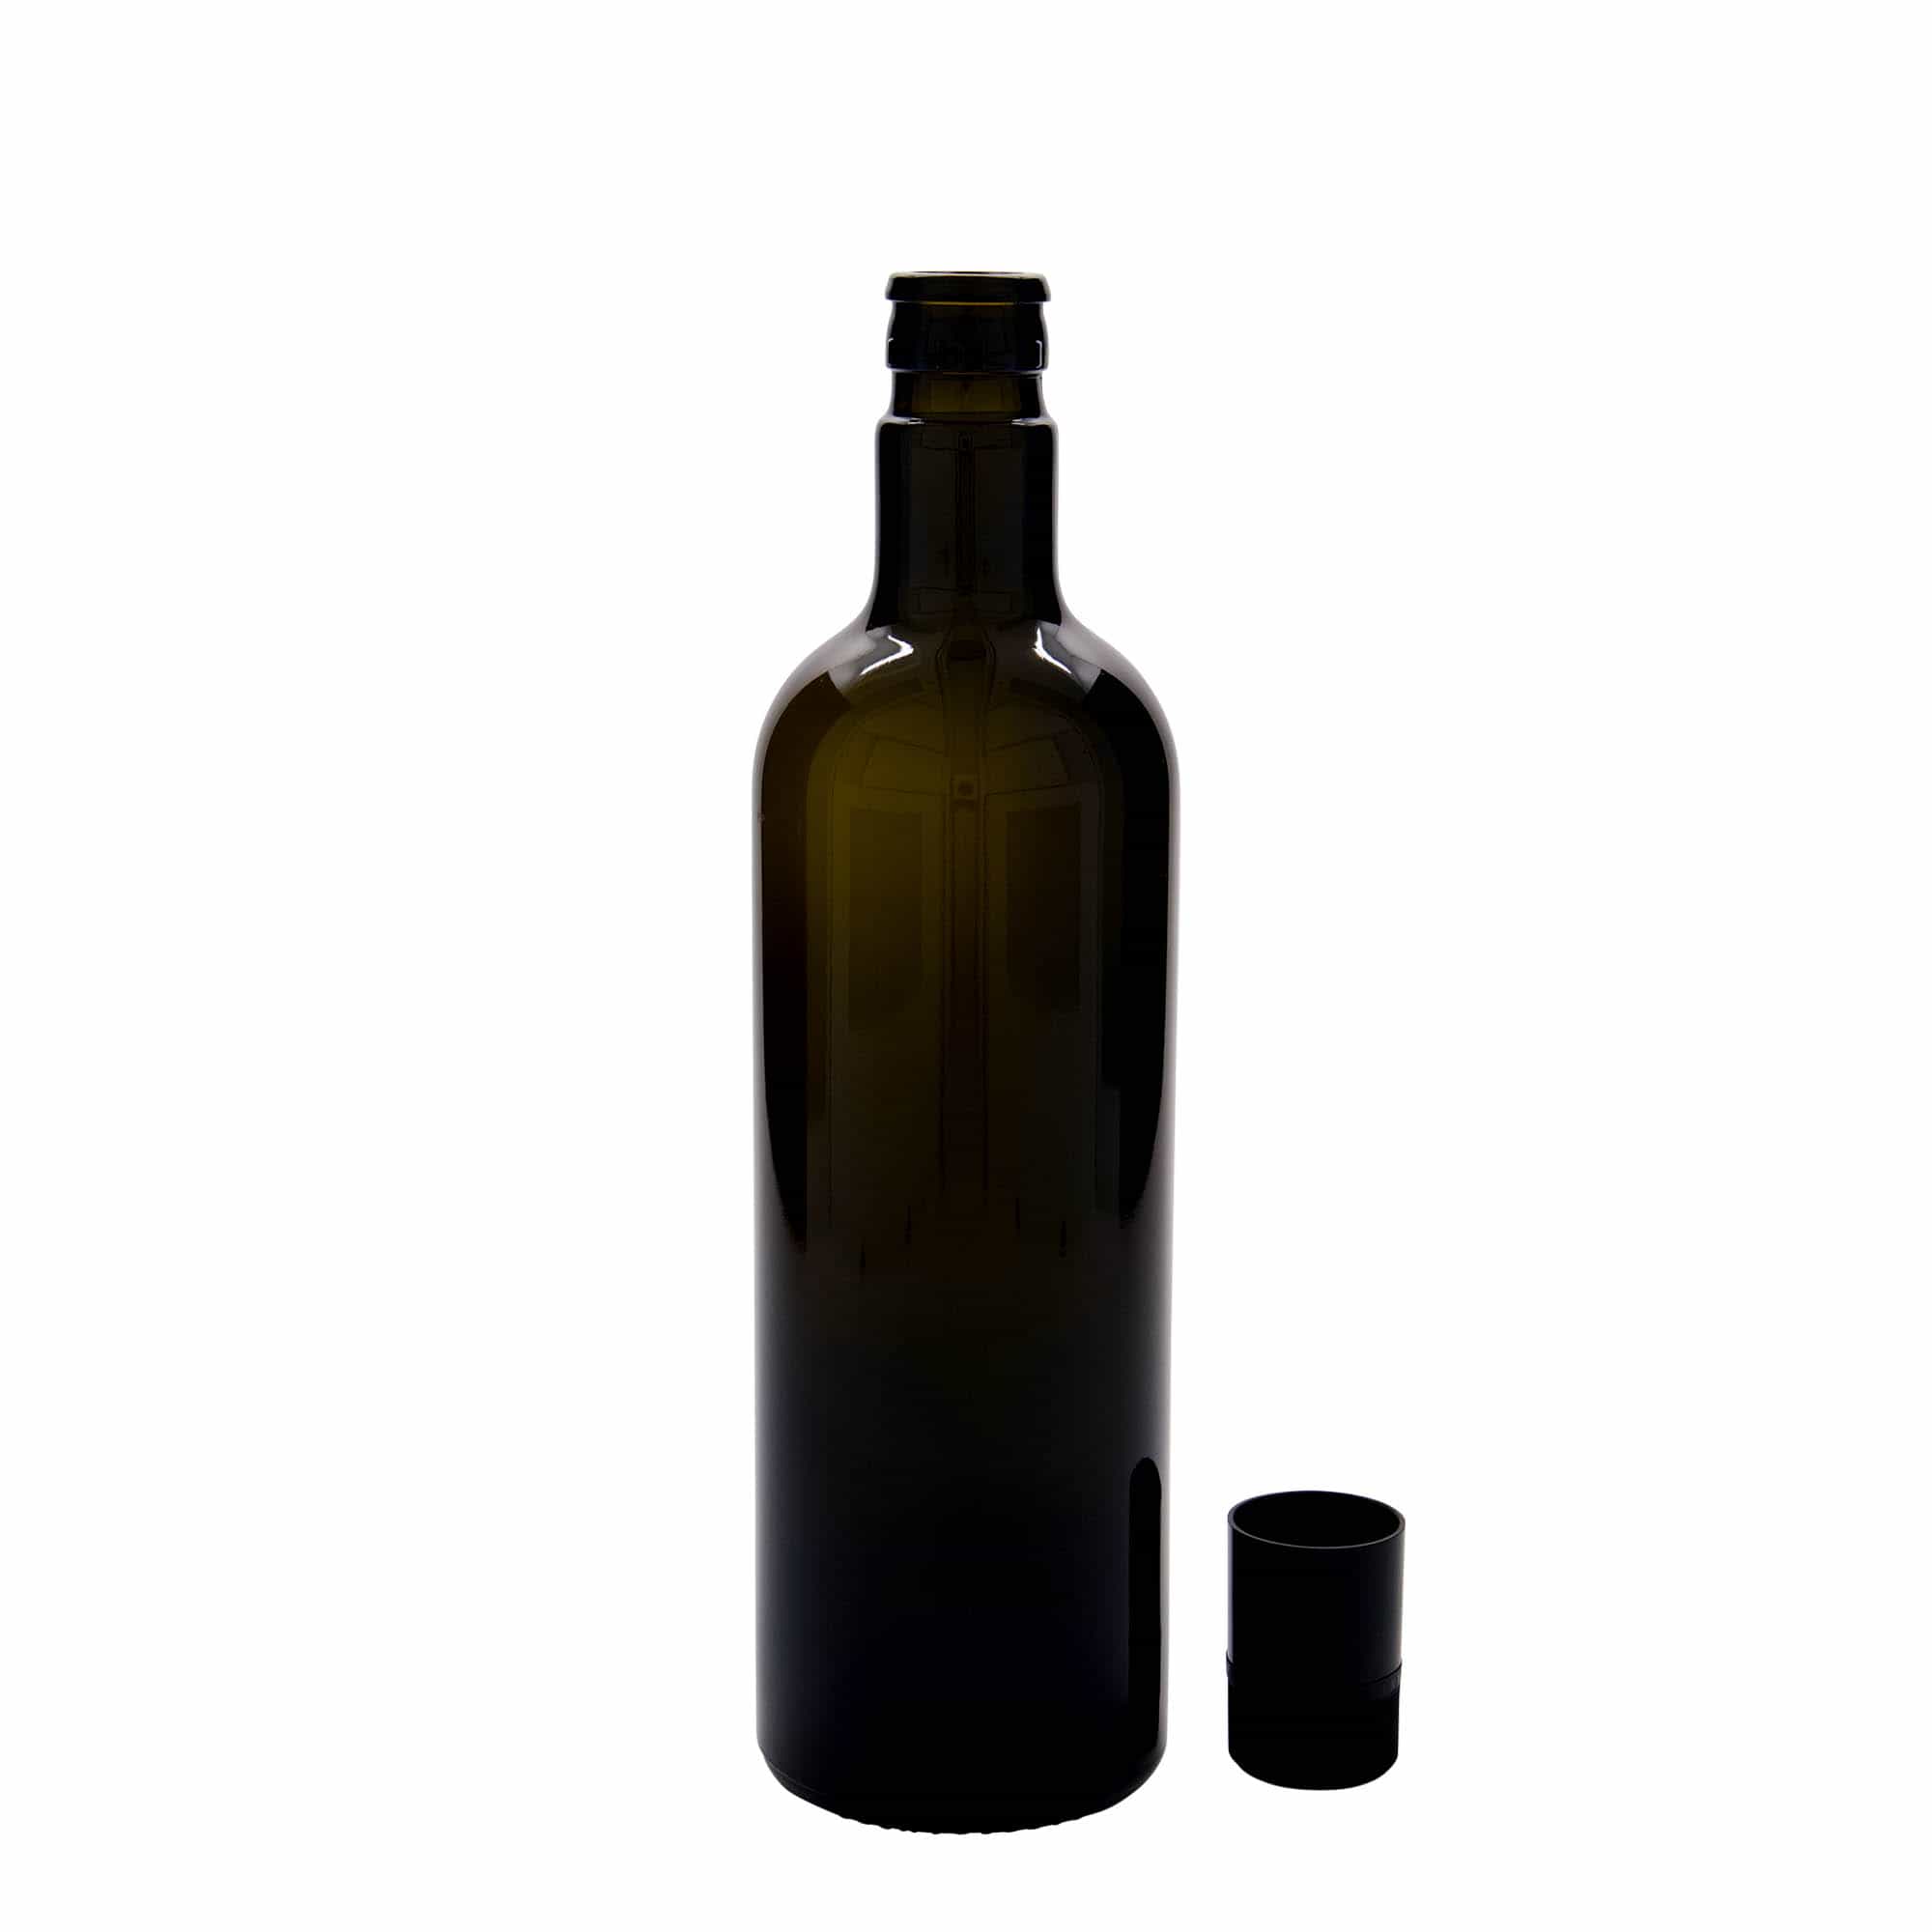 750 ml butelka na ocet/olej 'Willy New', szkło, kolor zielony antyczny, zamknięcie: DOP